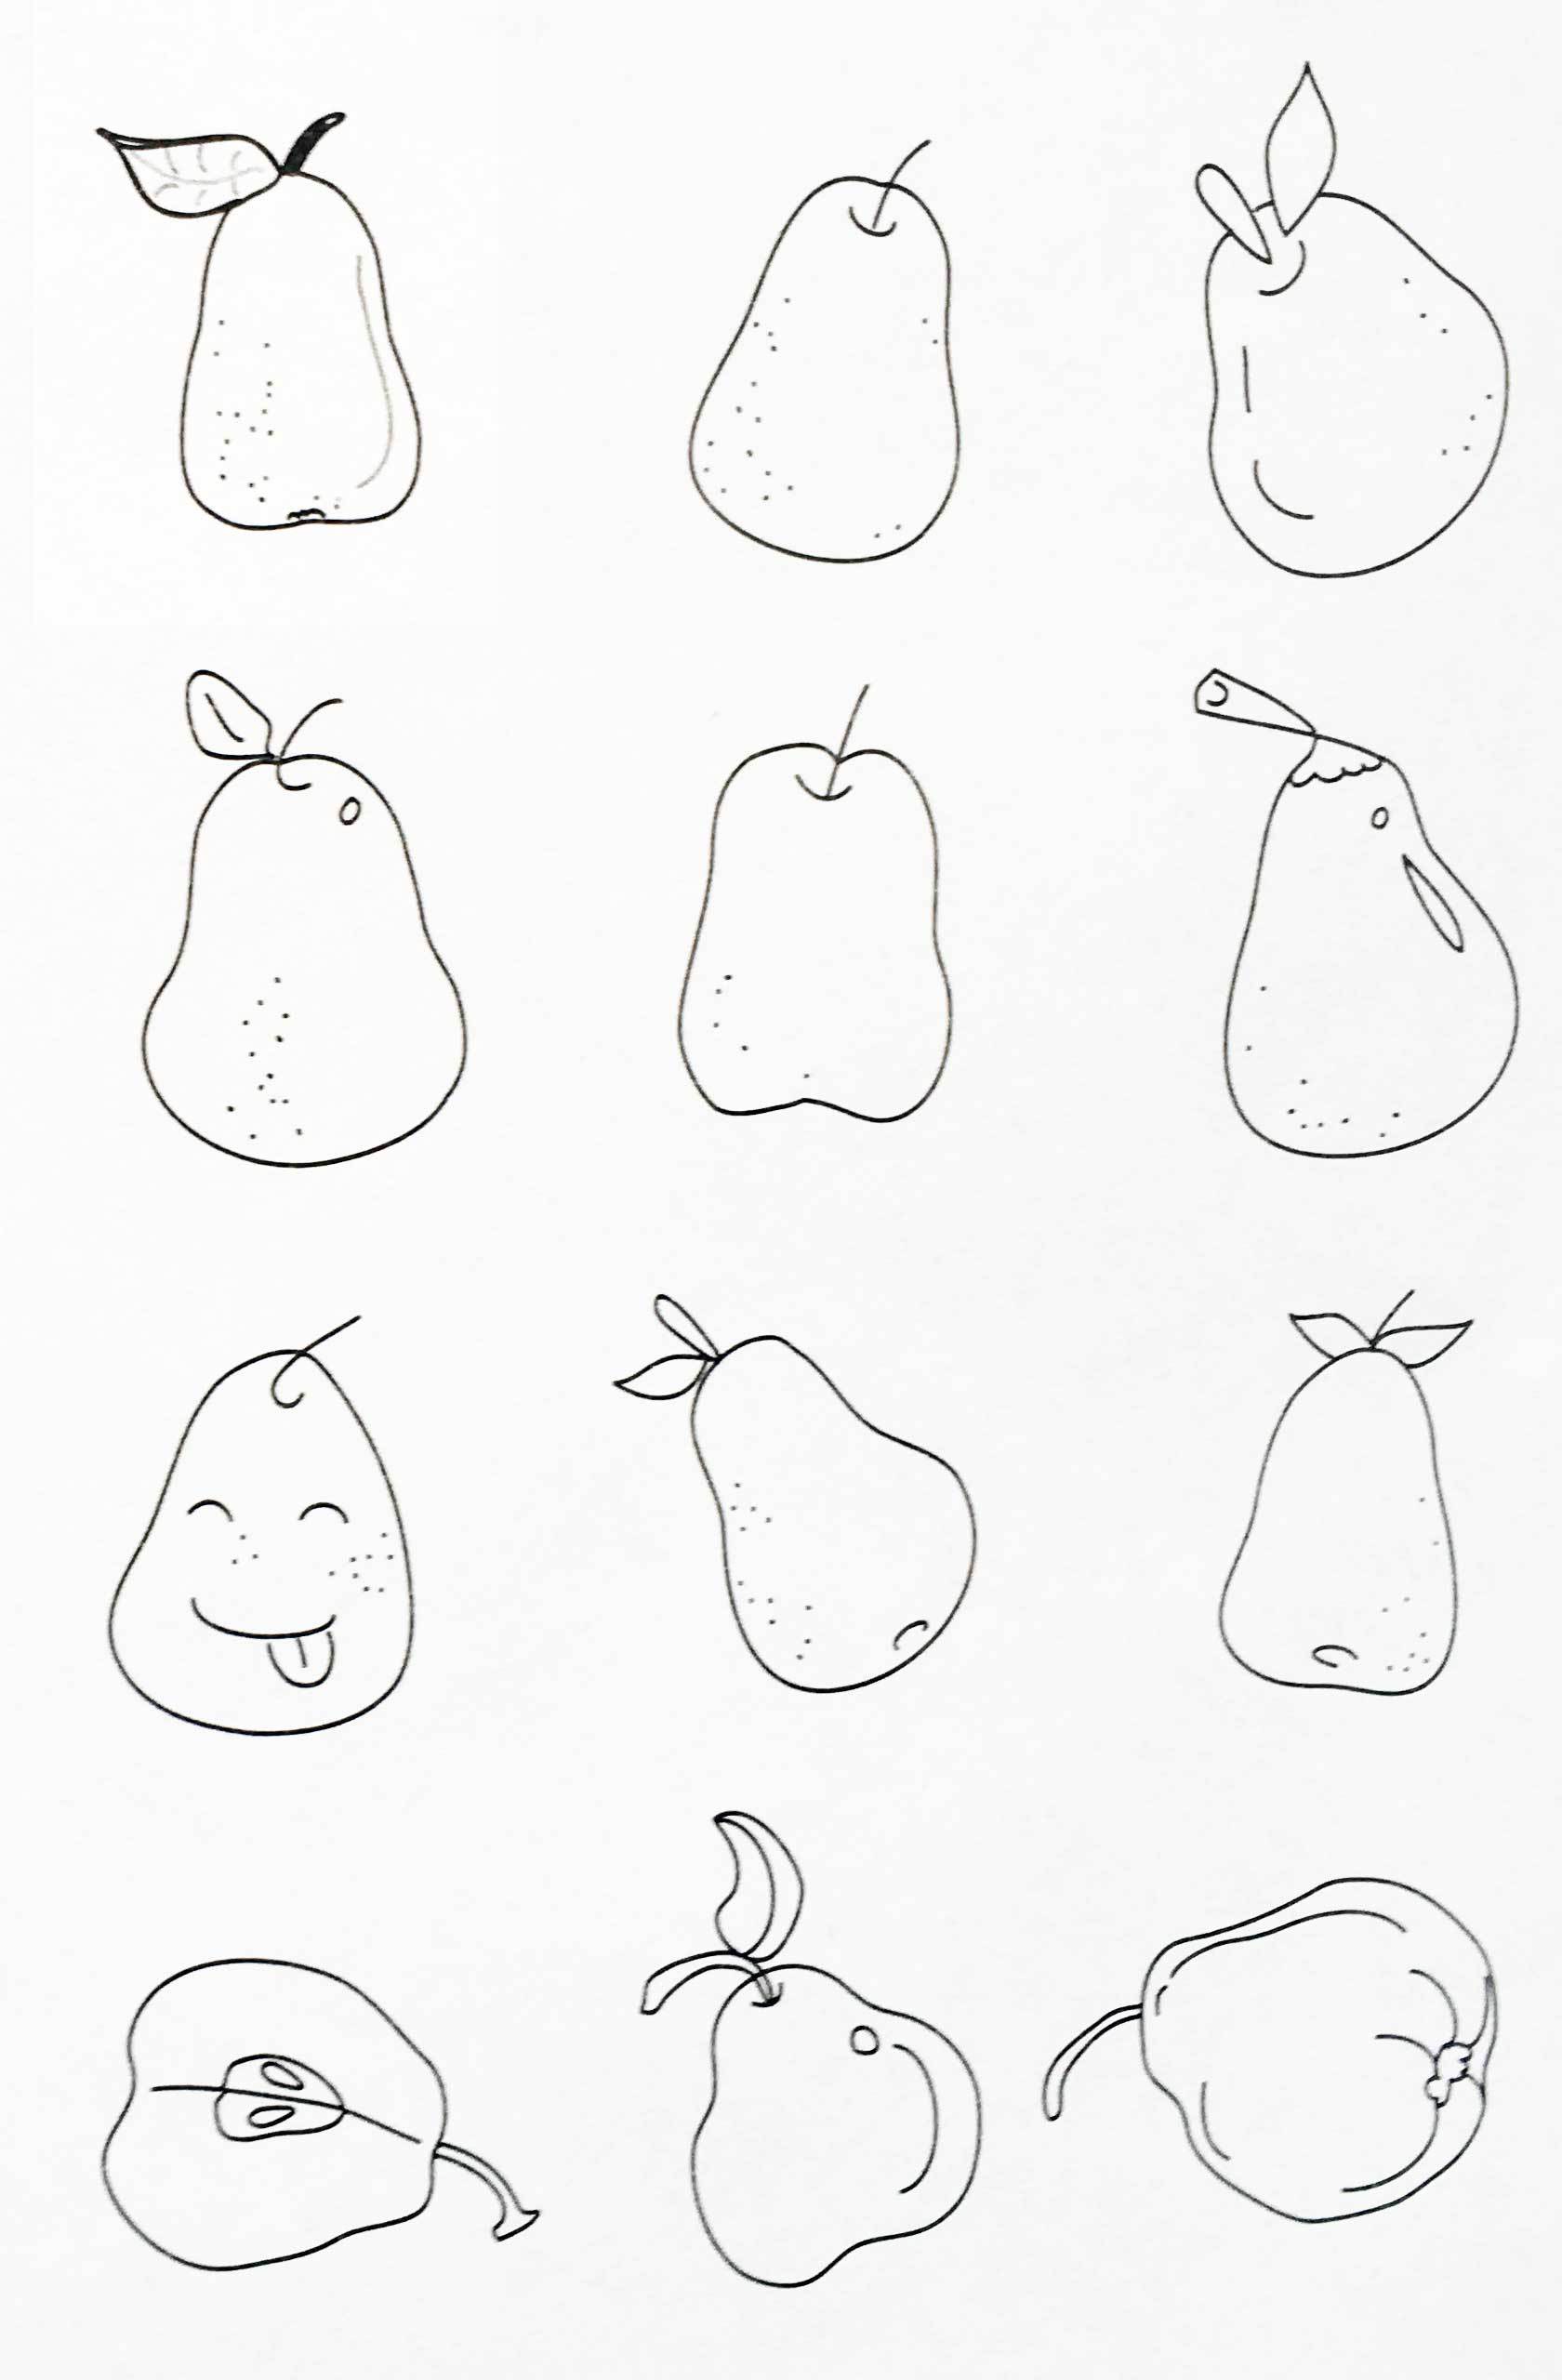 梨的画法 简单图片